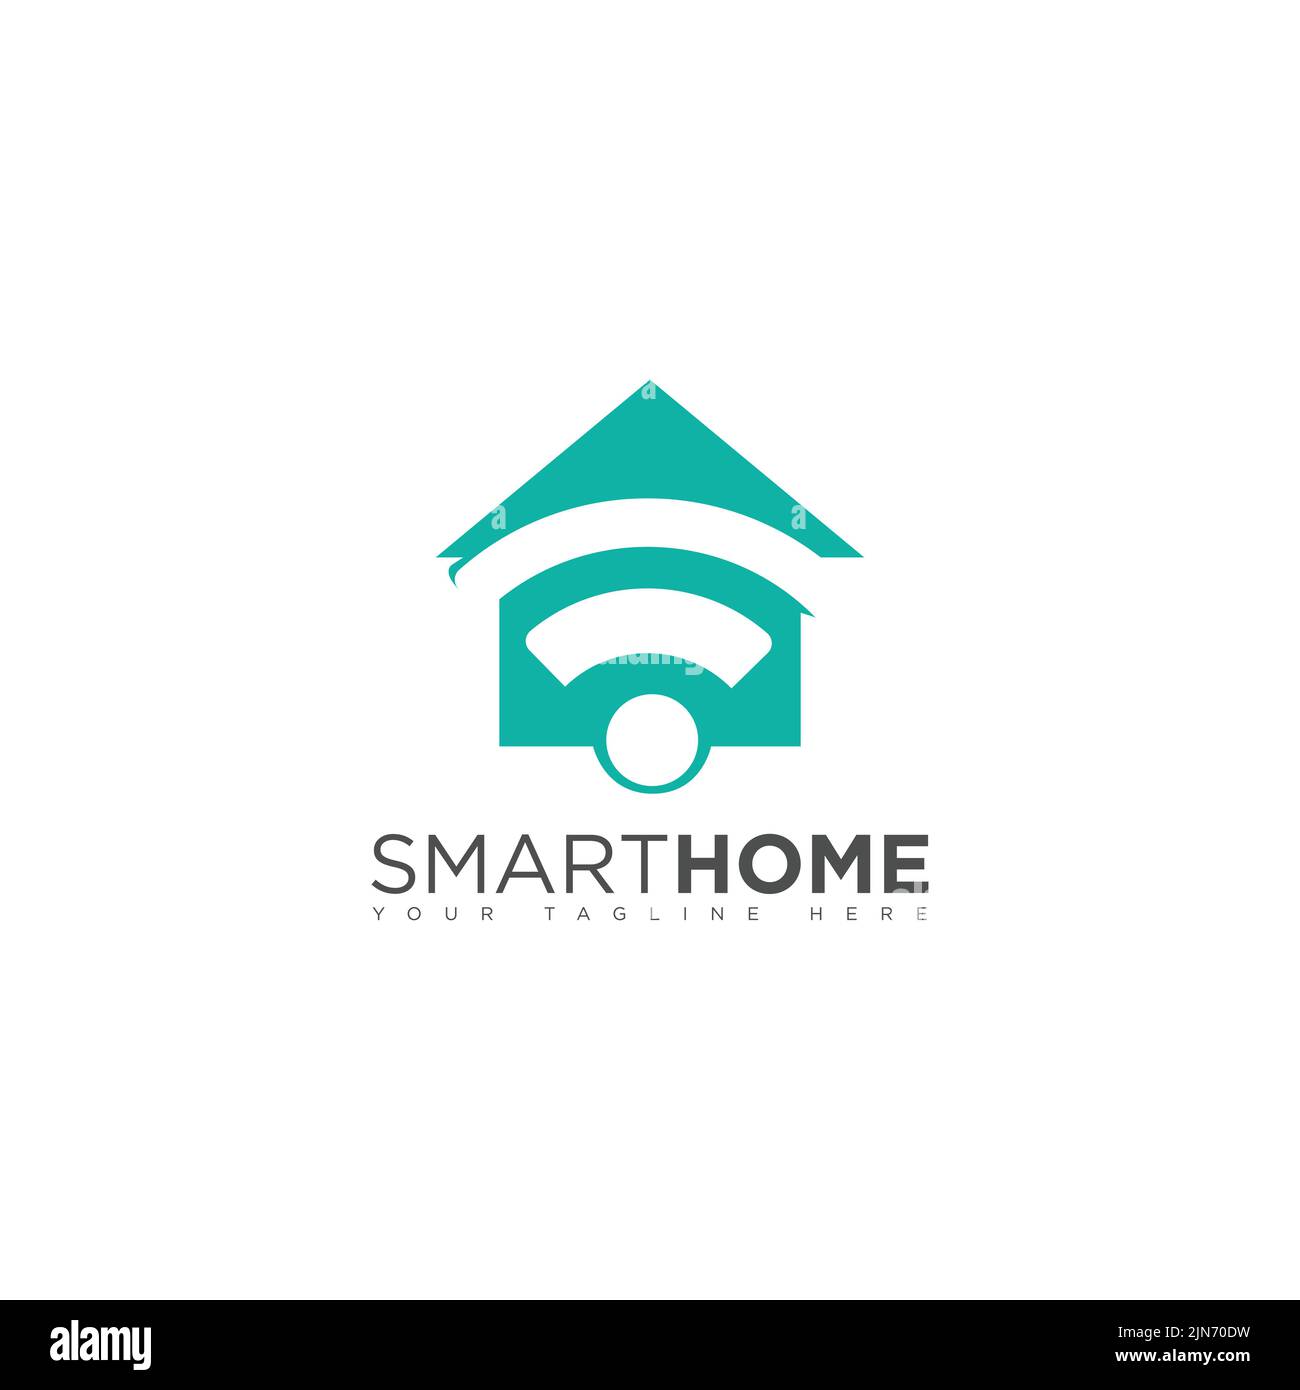 Smart House Logo Design-Vorlage. Einfache Elementdarstellung. Kann für Web und mobile Geräte verwendet werden. Stock Vektor